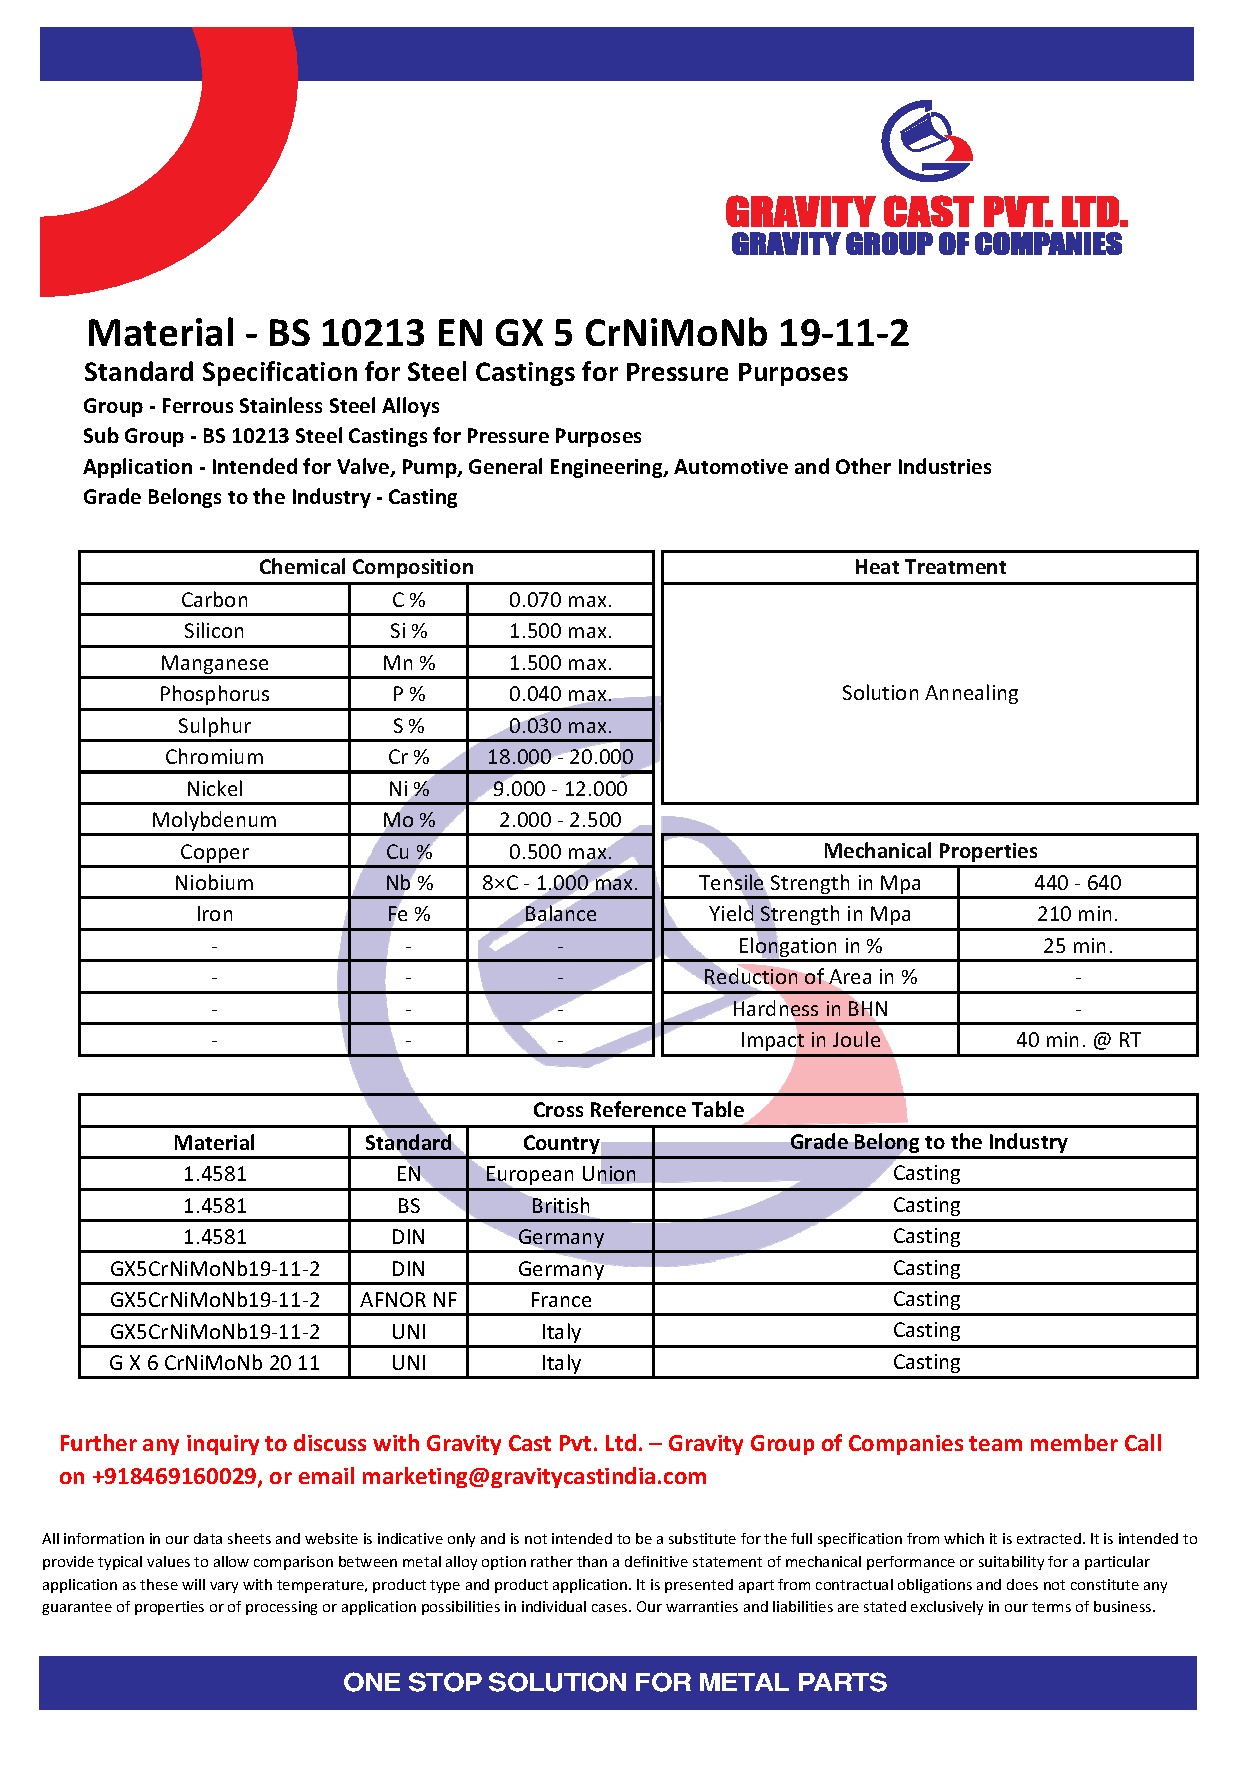 BS 10213 EN GX 5 CrNiMoNb 19-11-2.pdf